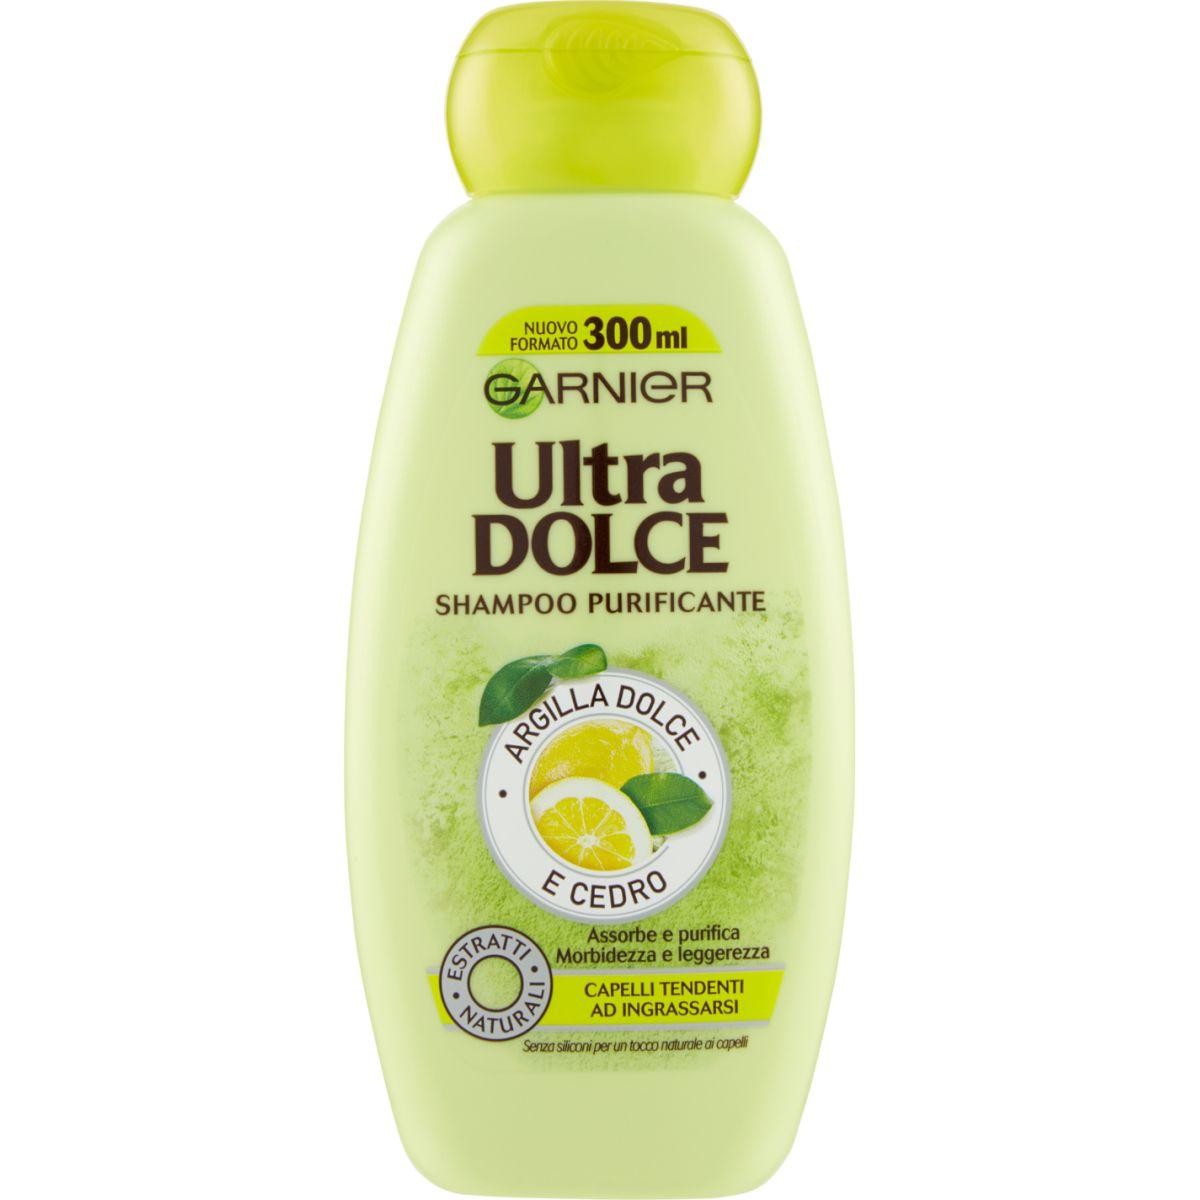 Garnier Ultra Dolce Shampoo Purificante - Argilla Dolce e Cedro - Clicca l'immagine per chiudere